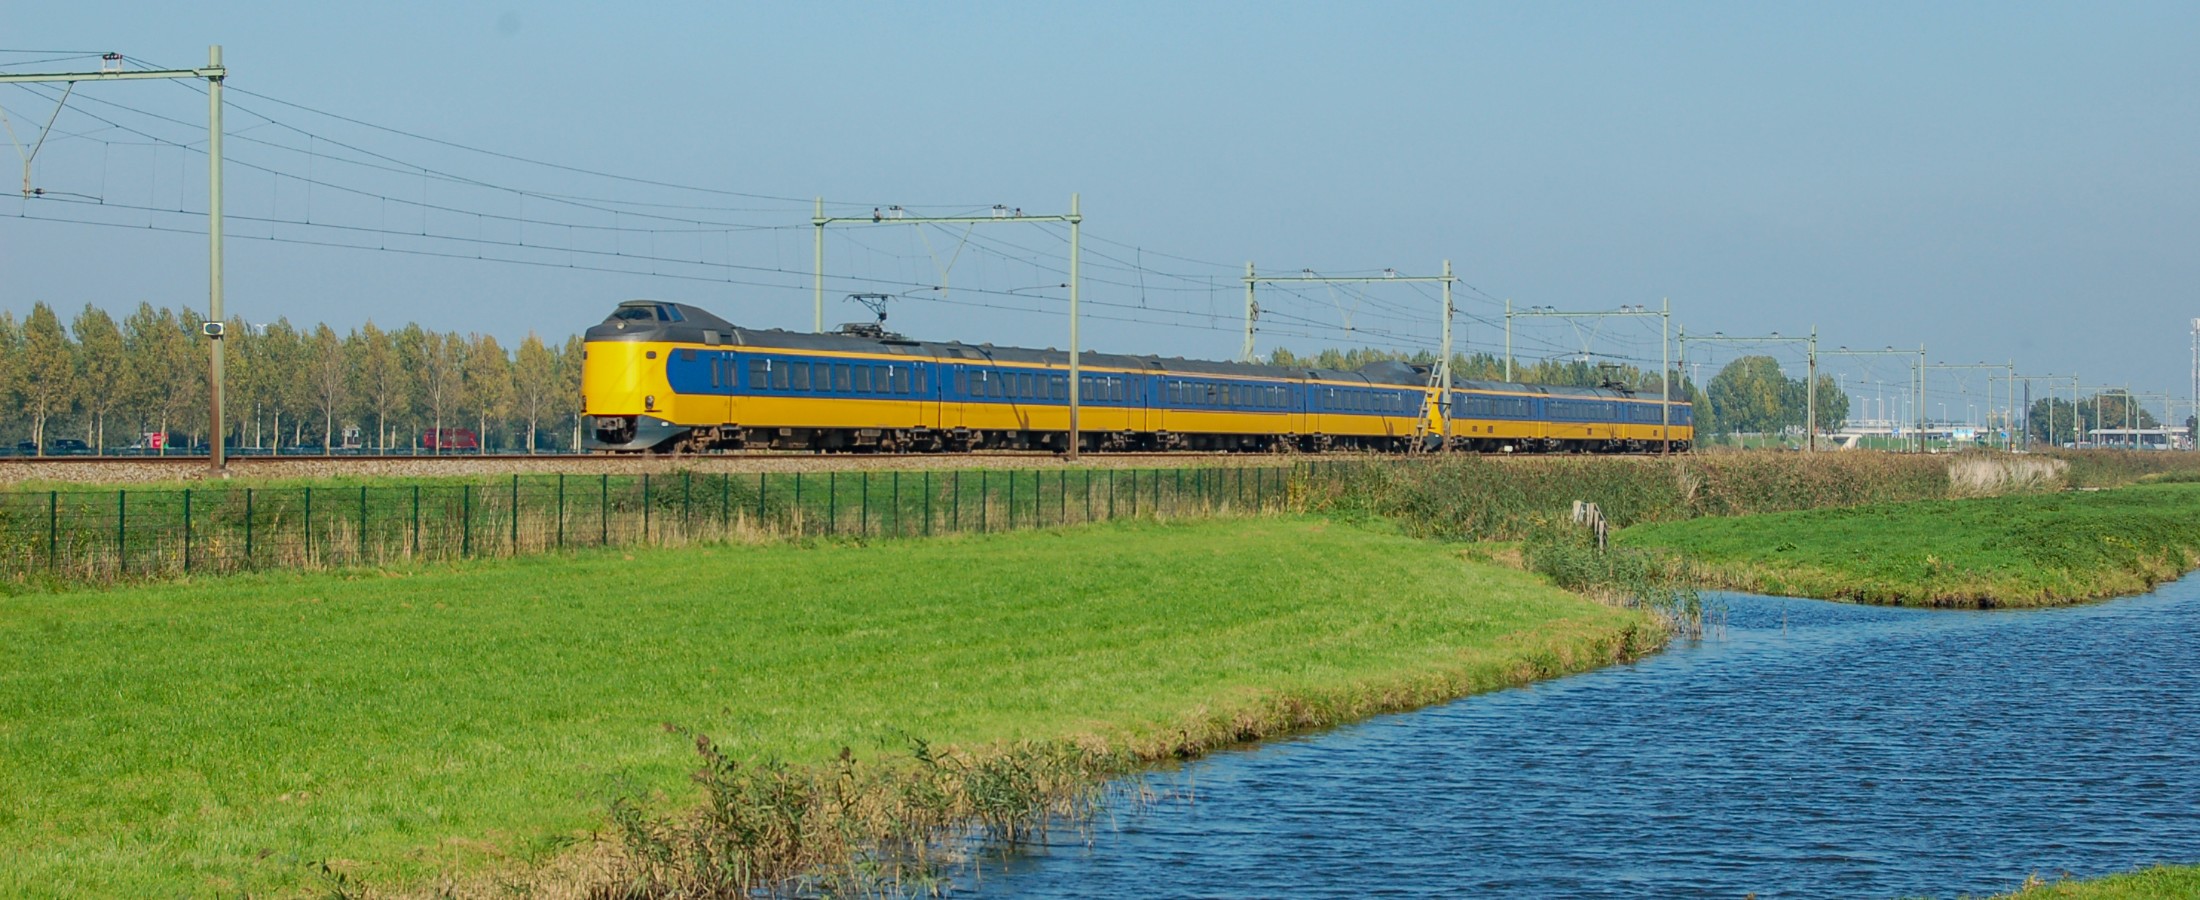 Deltaplan biedt kansen voor Noordelijk Nederland